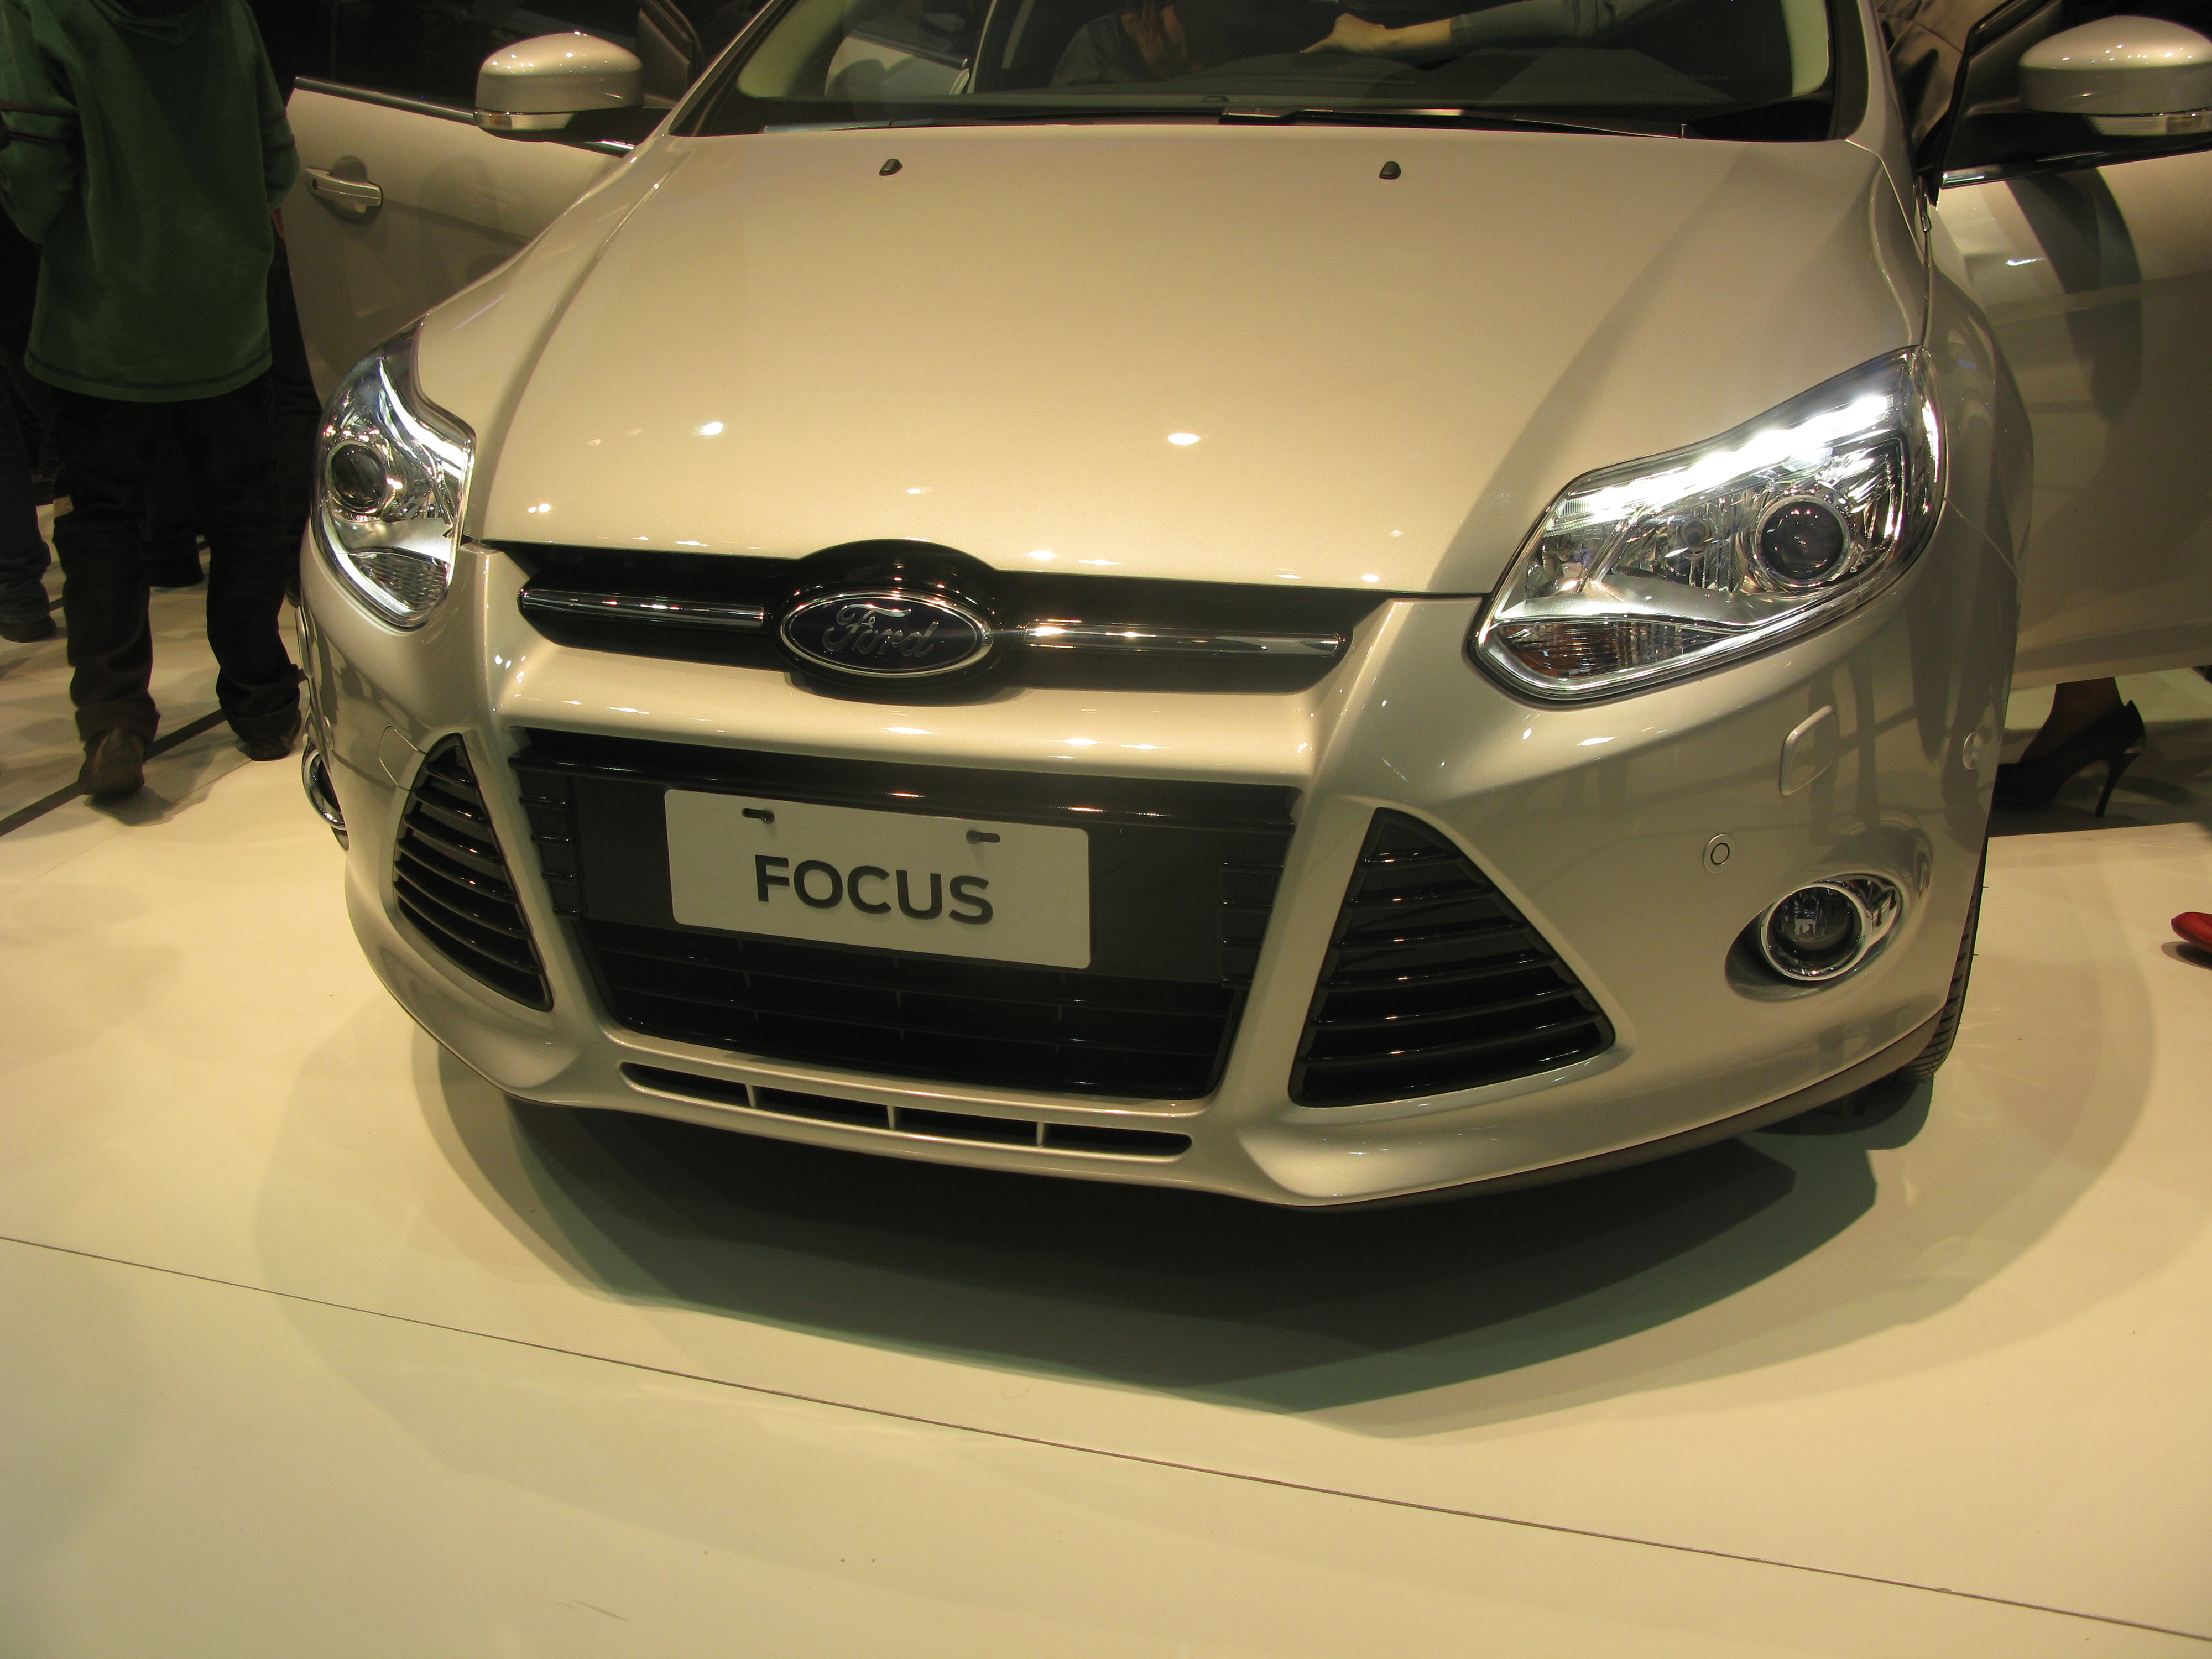 Lançada na Europa no ano passado, terceira geração do Ford Focus chega em outubro nas carrocerias hatch e sedã